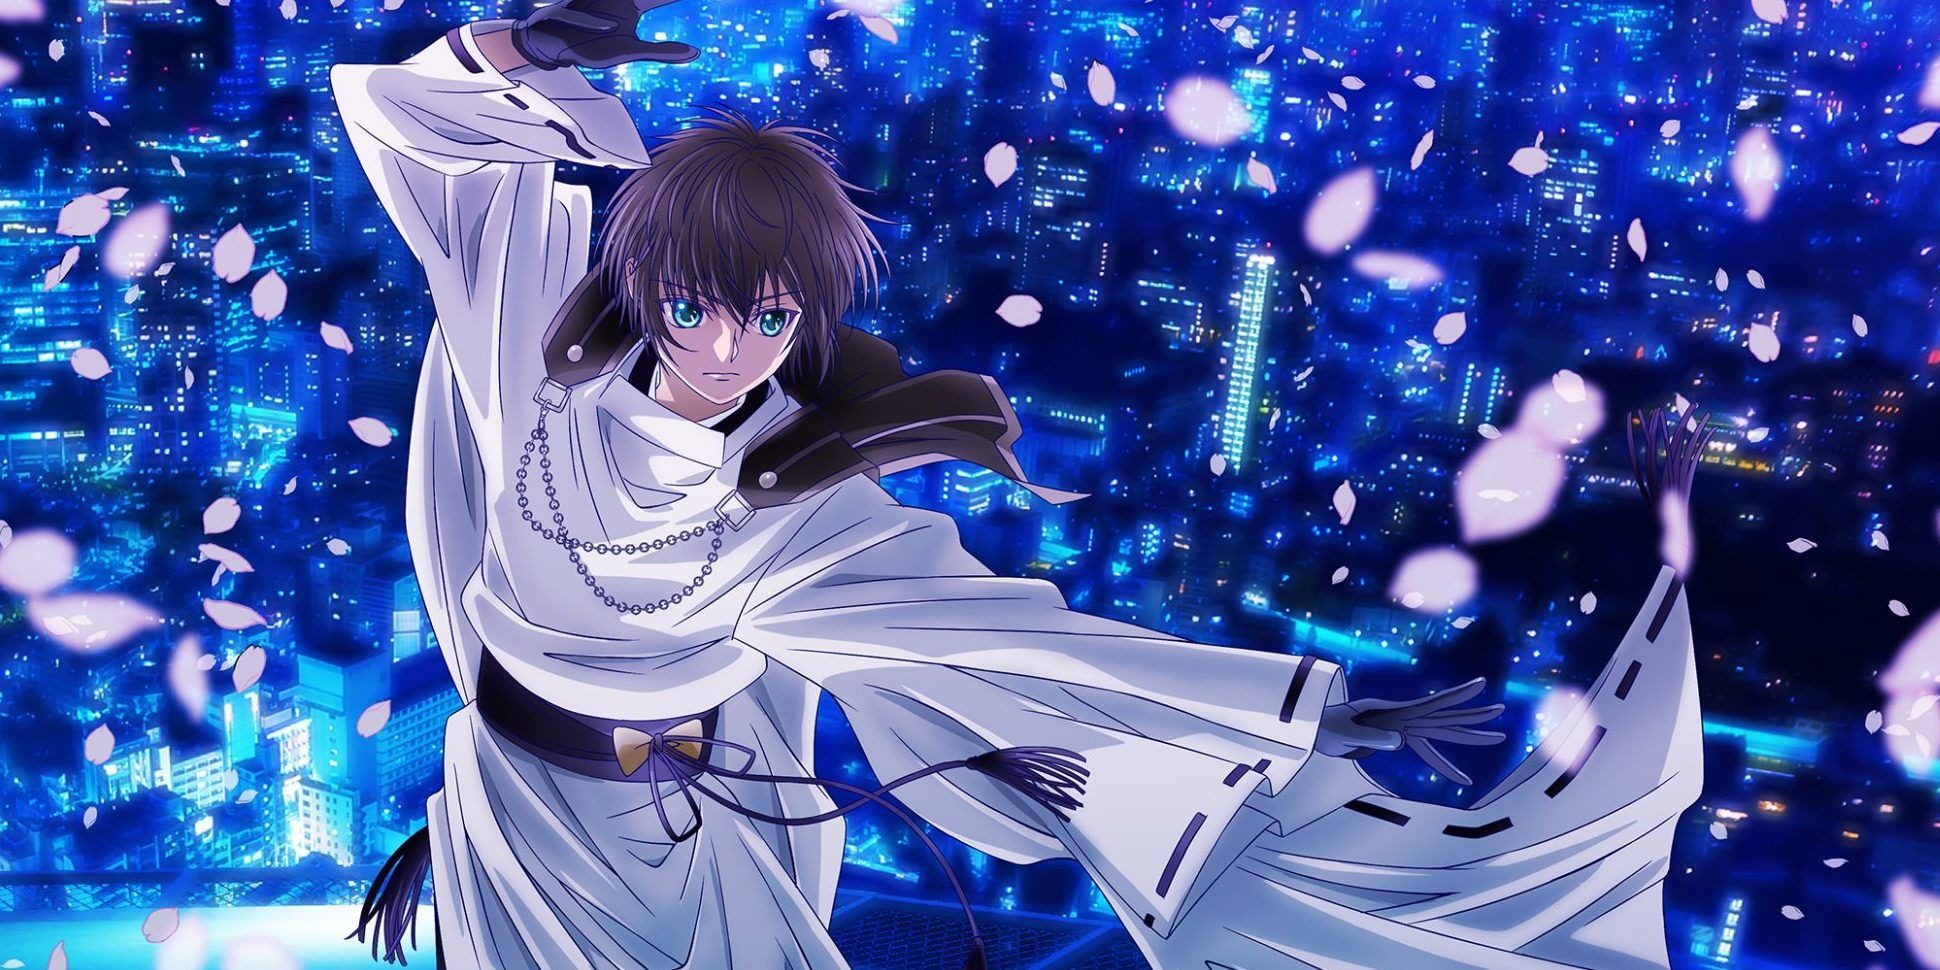 Tokyo Babylon 2021 Anime Canceled Over Plagiarism Concerns